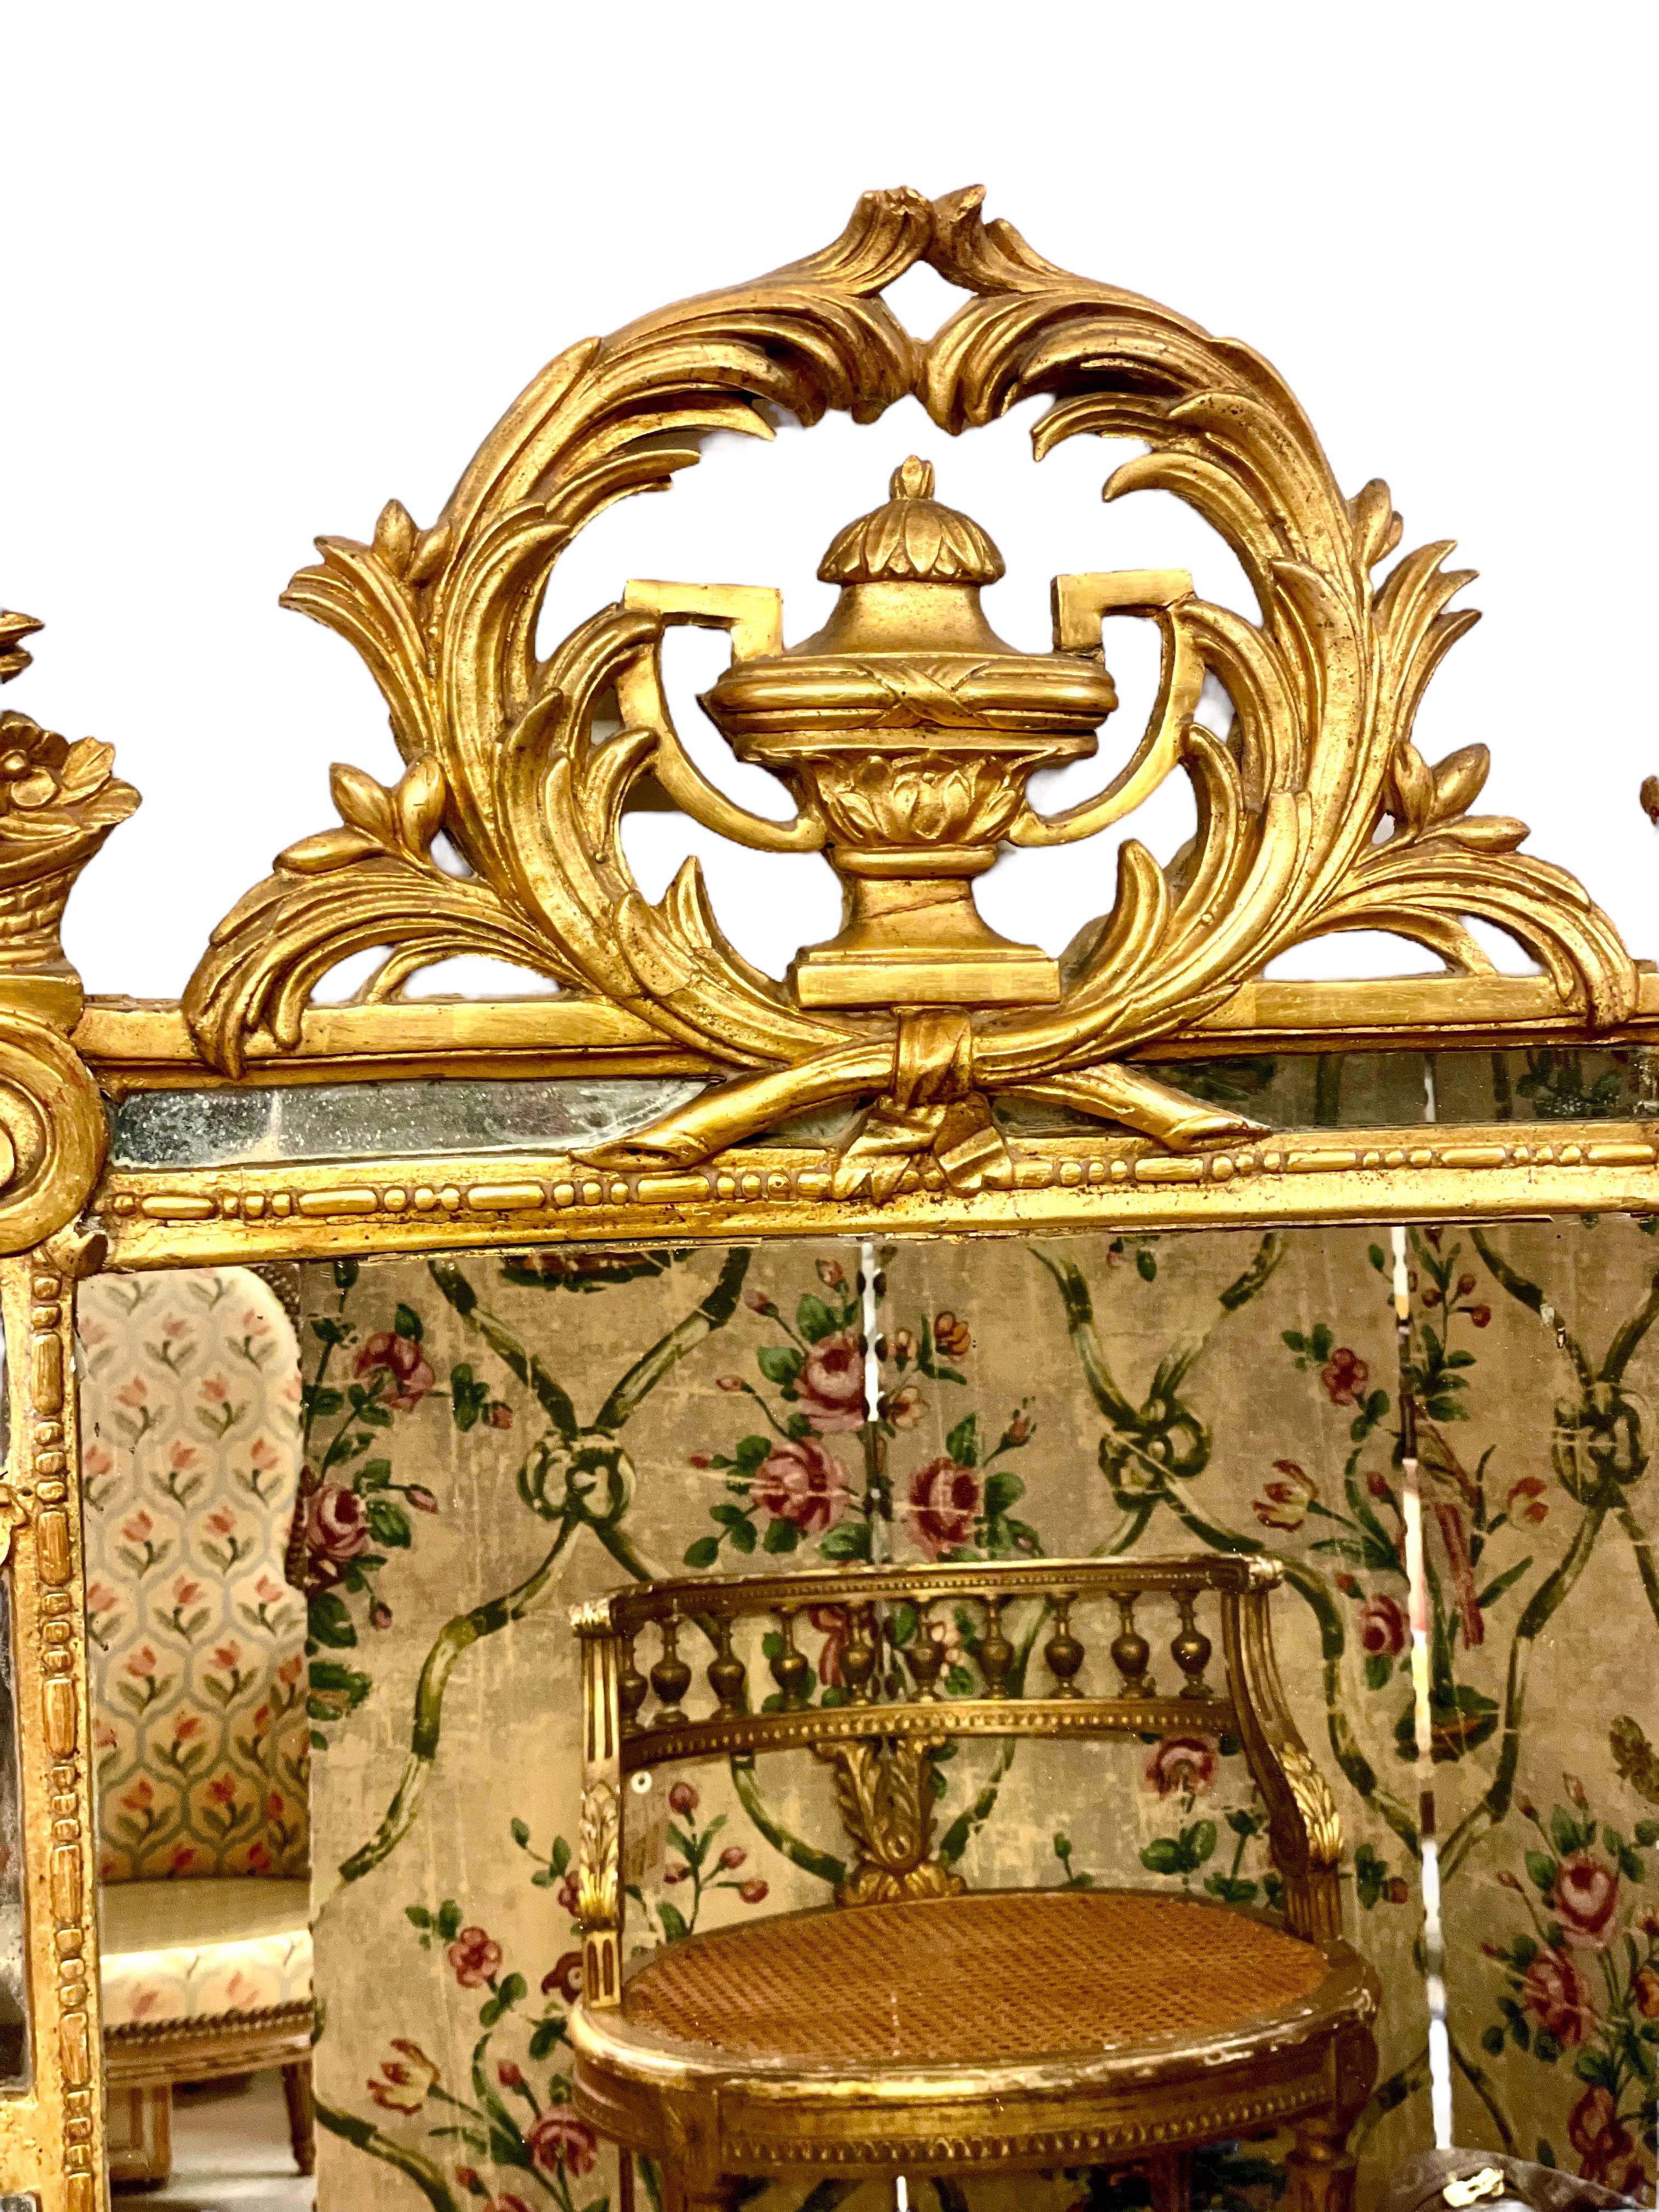 Ein wirklich außergewöhnlicher französischer Parclose- oder Kissenspiegel aus dem späten 18. Jahrhundert in einem kunstvollen, reich geschnitzten Goldholzrahmen. Dieser rechteckige Spiegel ist an allen vier Seiten mit wunderschönen handgeschnitzten